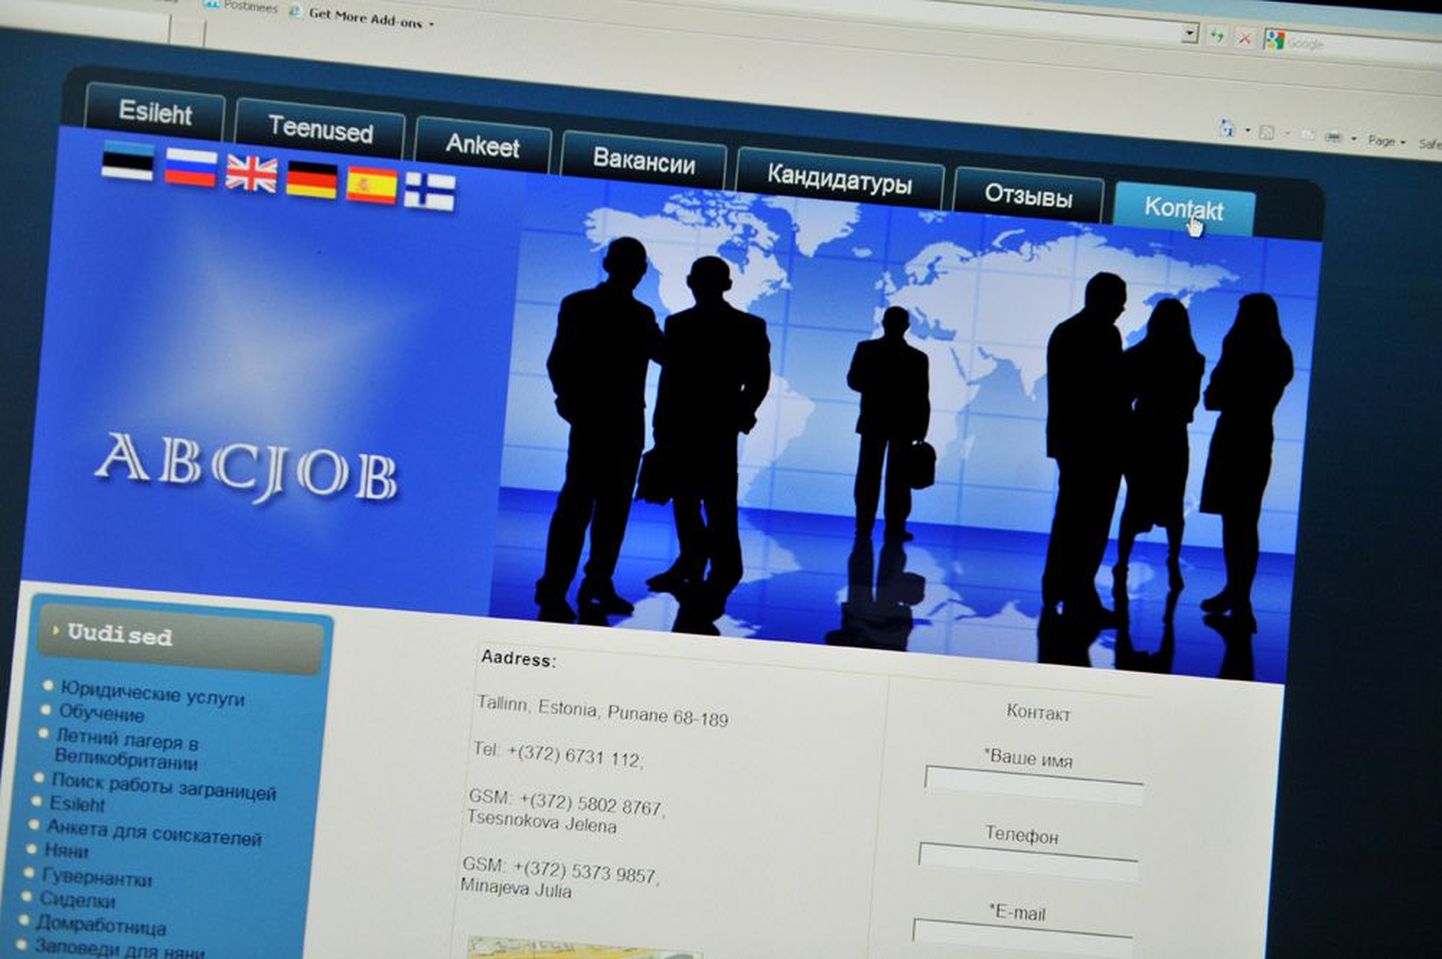 Firma nimega ABCJOB pakub eestimaalastele välismaal tööd, kuid firma ise pole kantud majandustegevuse registrisse ja sel pole vahenduseks isegi tegevusluba. Foto: